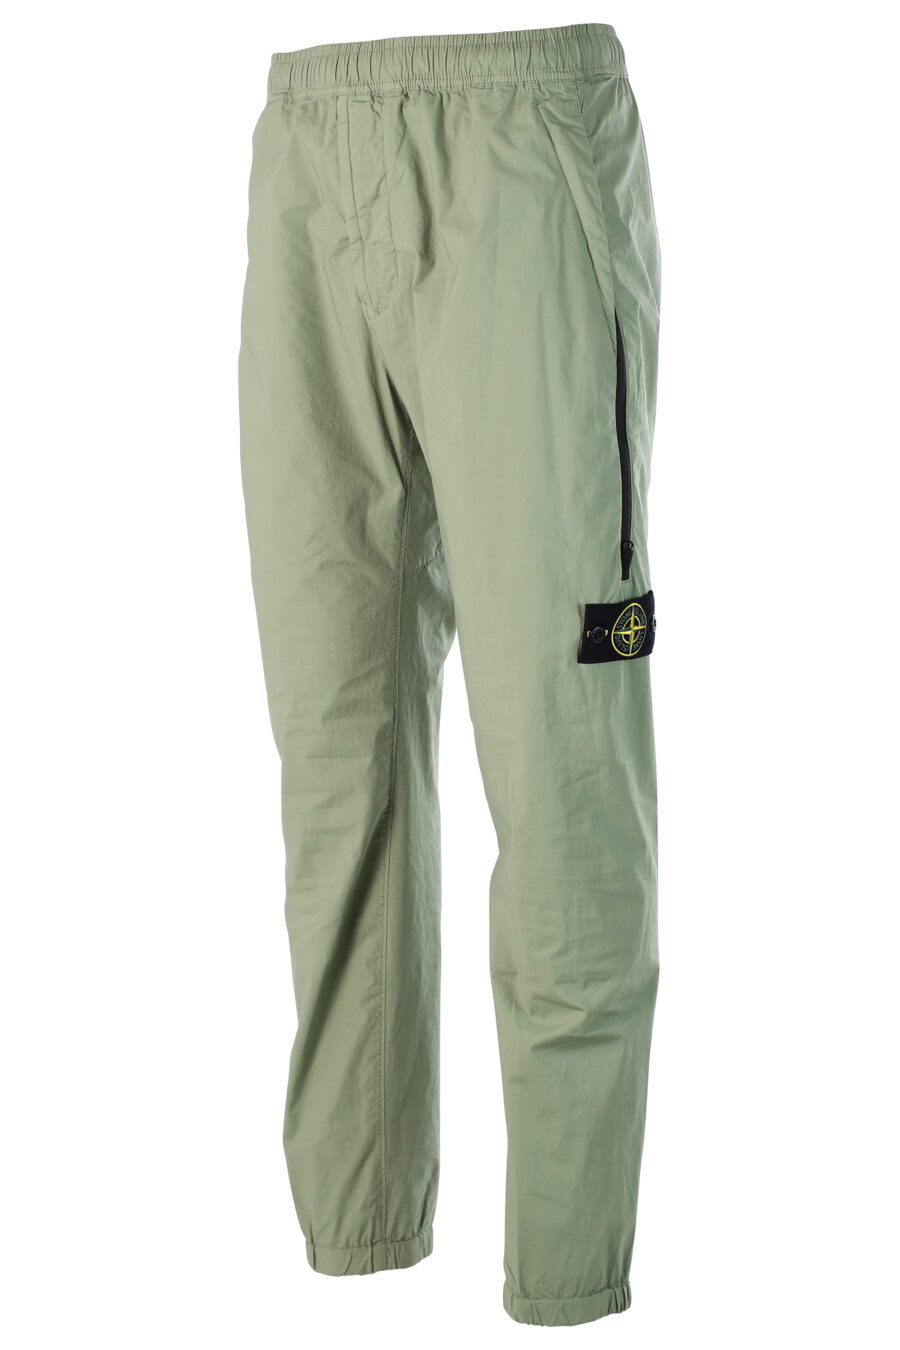 Pantalon cargo vert militaire avec patch - 8052572549175 2